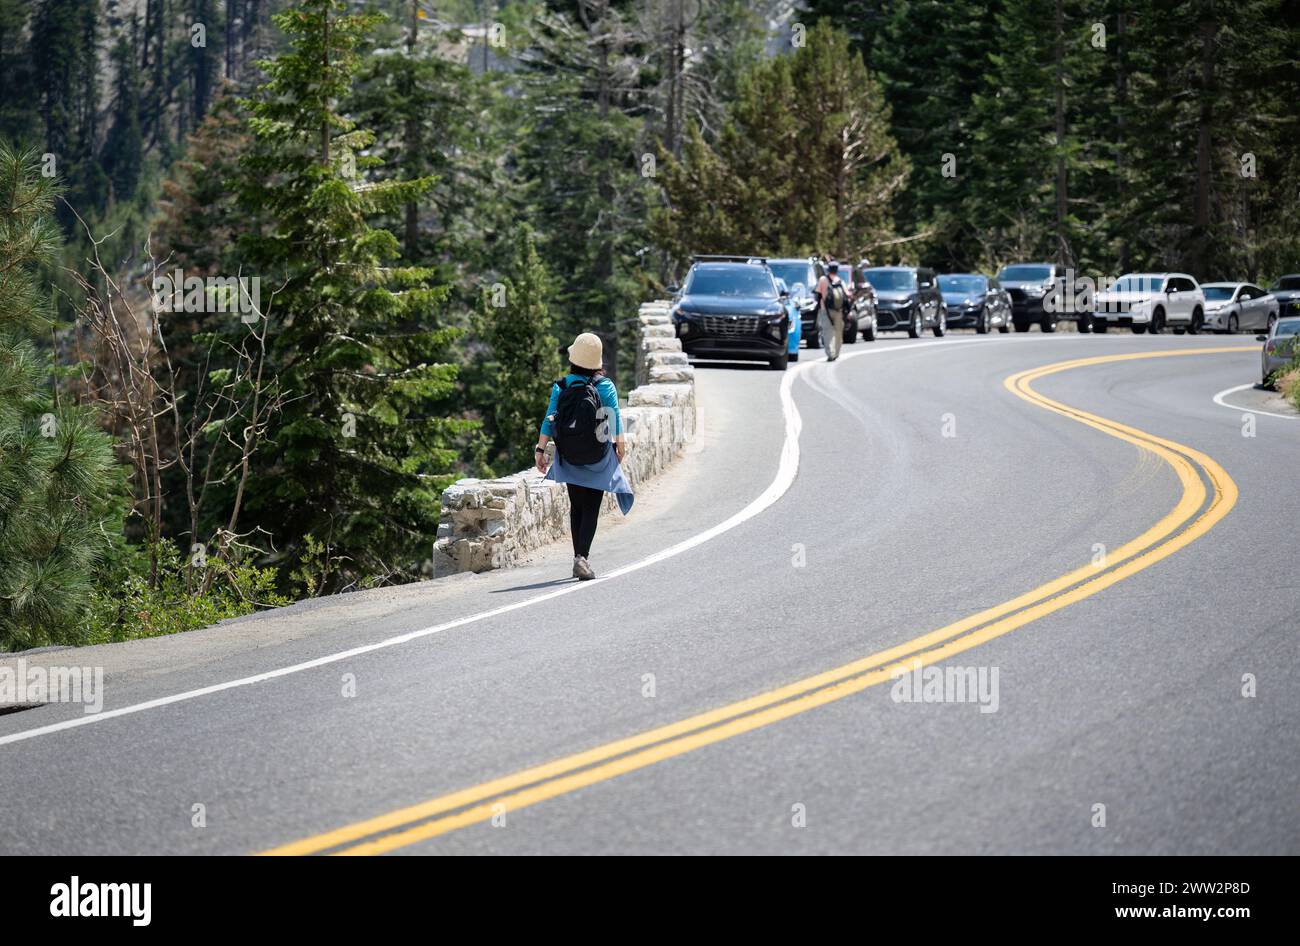 Die Leute laufen auf der geschäftigen Emerald Bay Road. Autos, die entlang der Straße geparkt wurden. Lake Tahoe. Kalifornien. Stockfoto